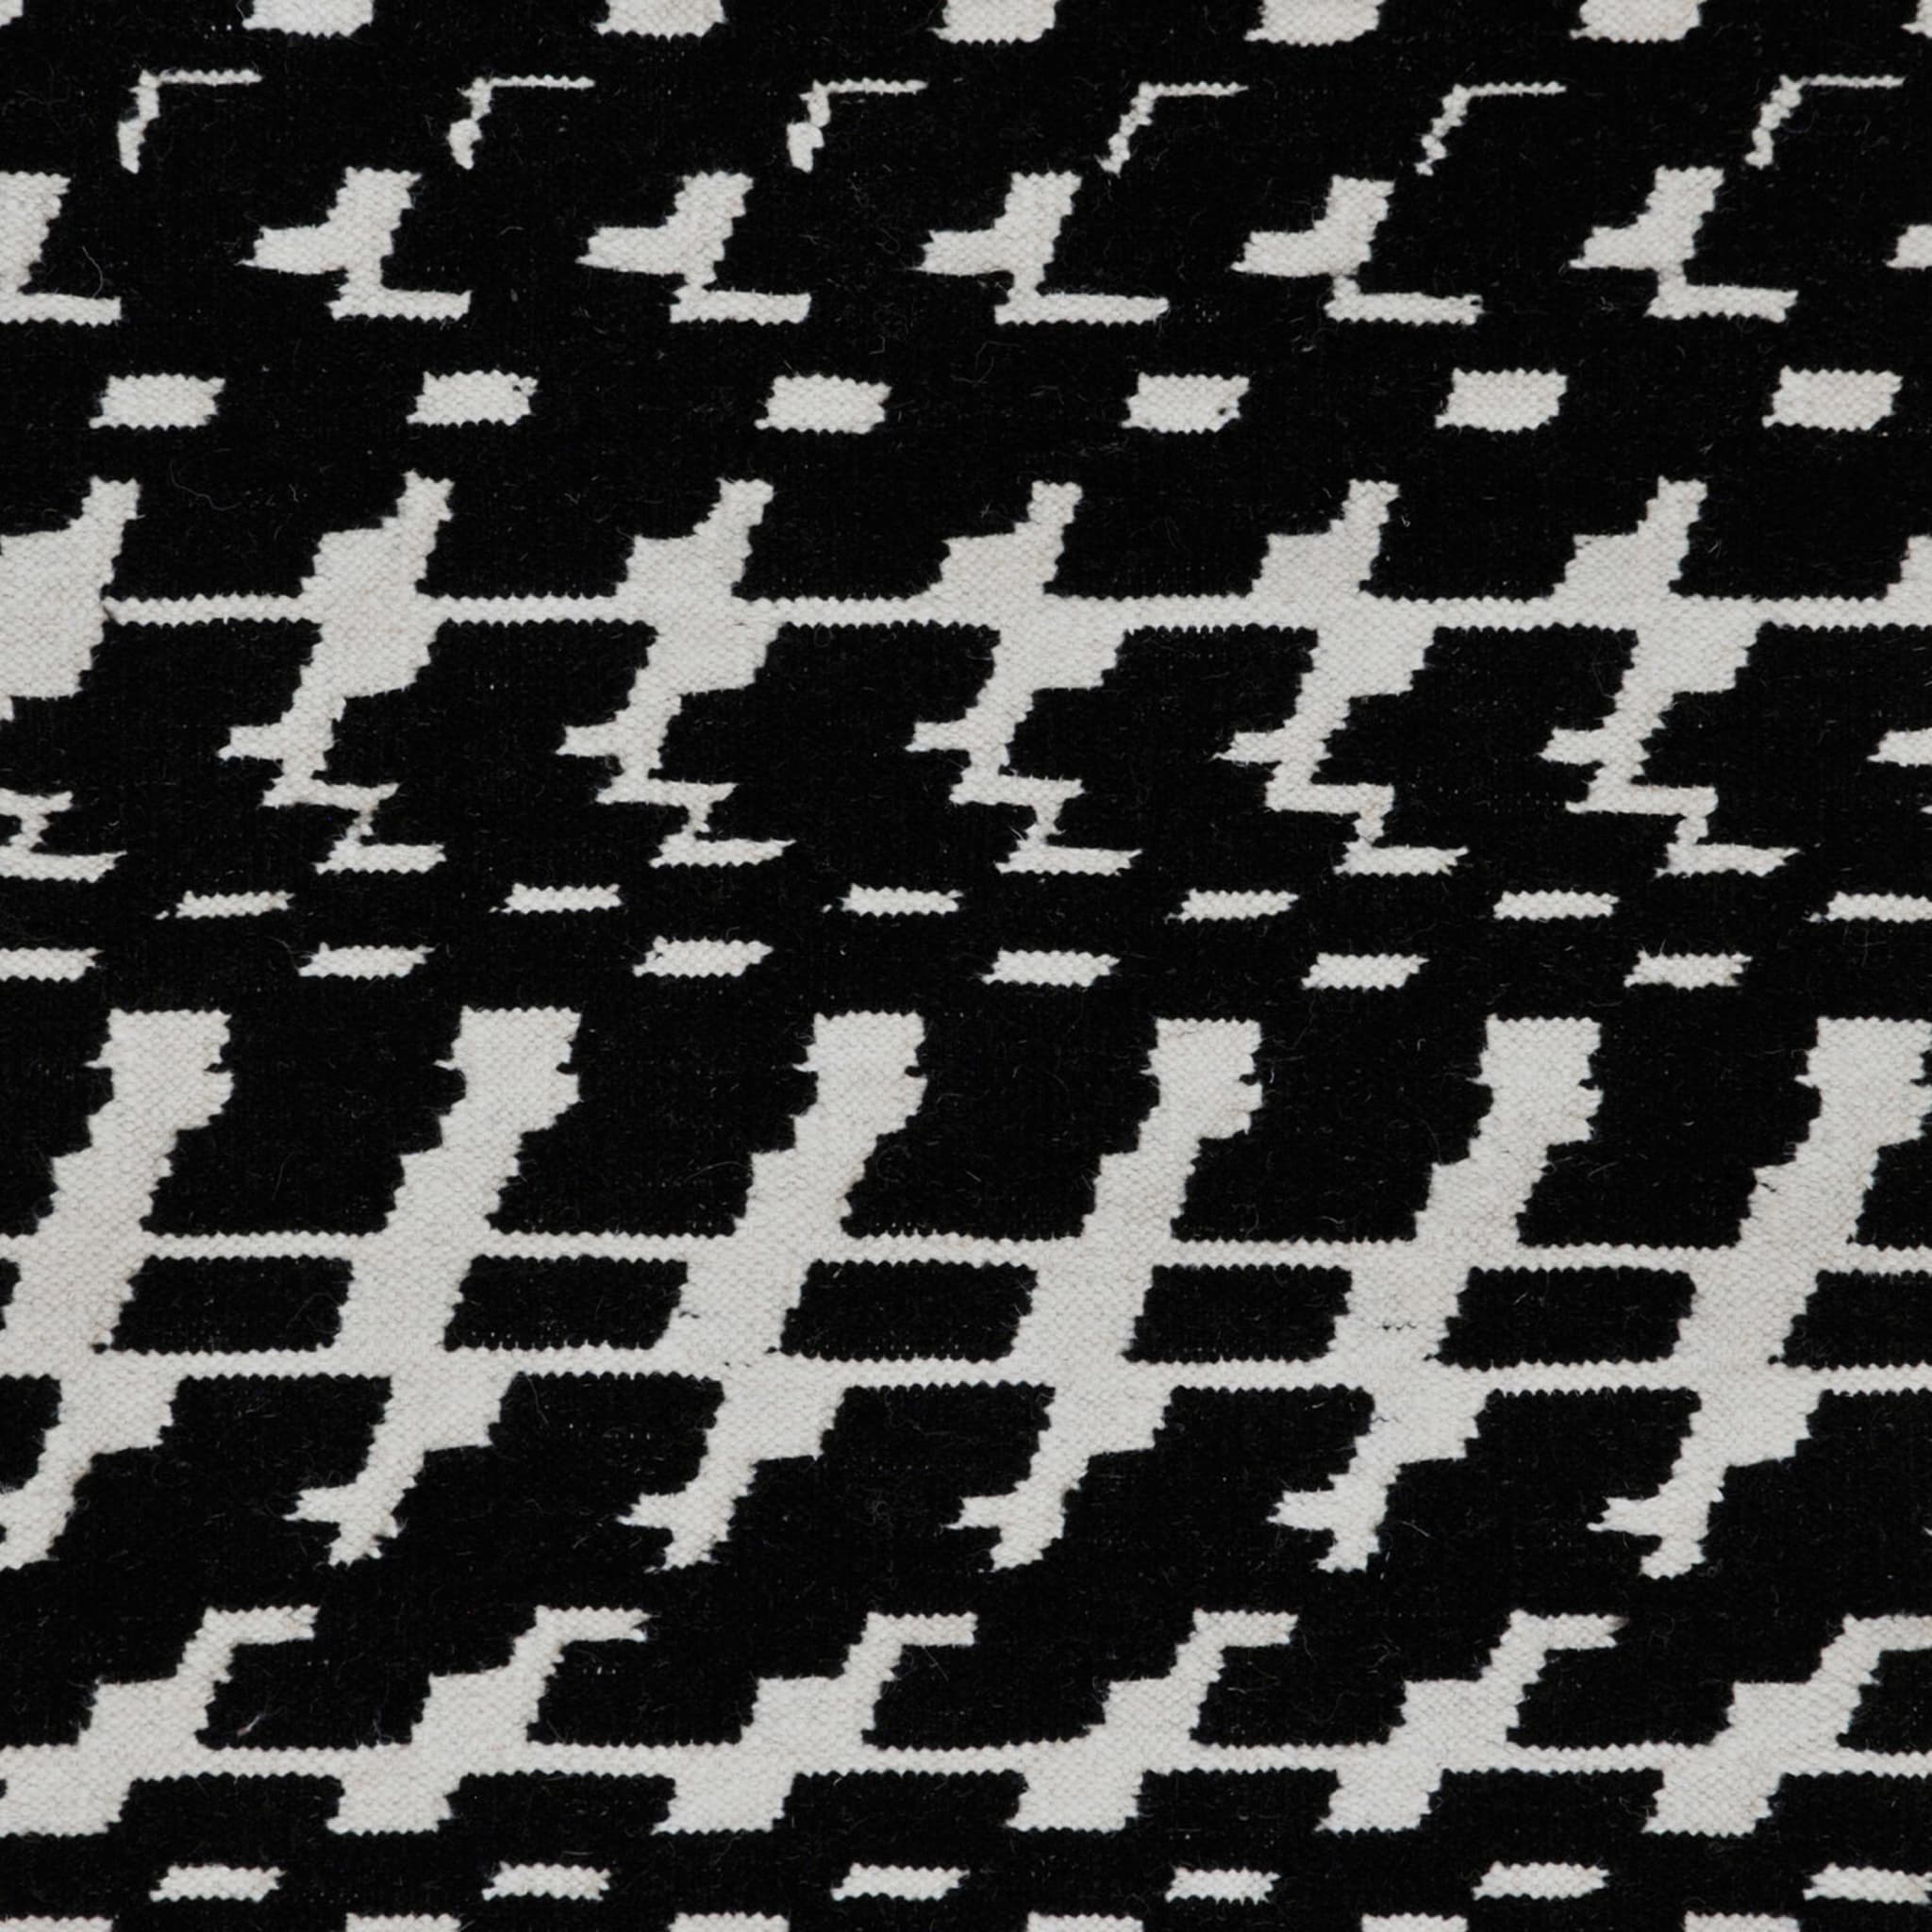 Fuoritempo Black & White Large Carpet - Alternative view 3